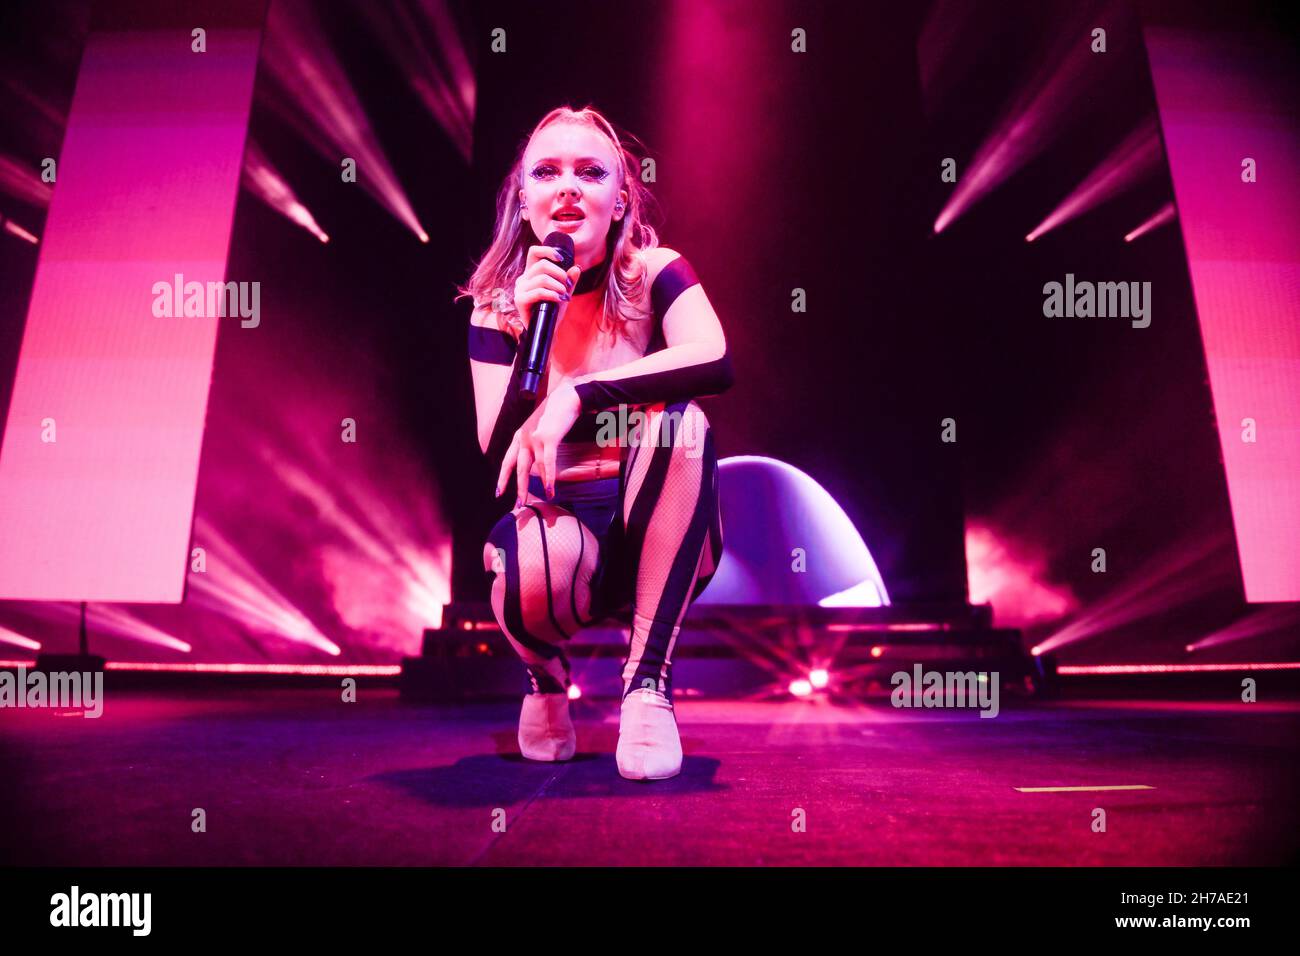 Stockholm, Sweden. 21st Nov, 2021. STOCKHOLM 20211121Swedish singer Zara  Larsson performs at Avicii Arena in Stockholm, Sweden, Nov. 21, 2021,  during The poster girl tour. Photo: Stina Stjernkvist/TT/code 11610 Credit:  TT News